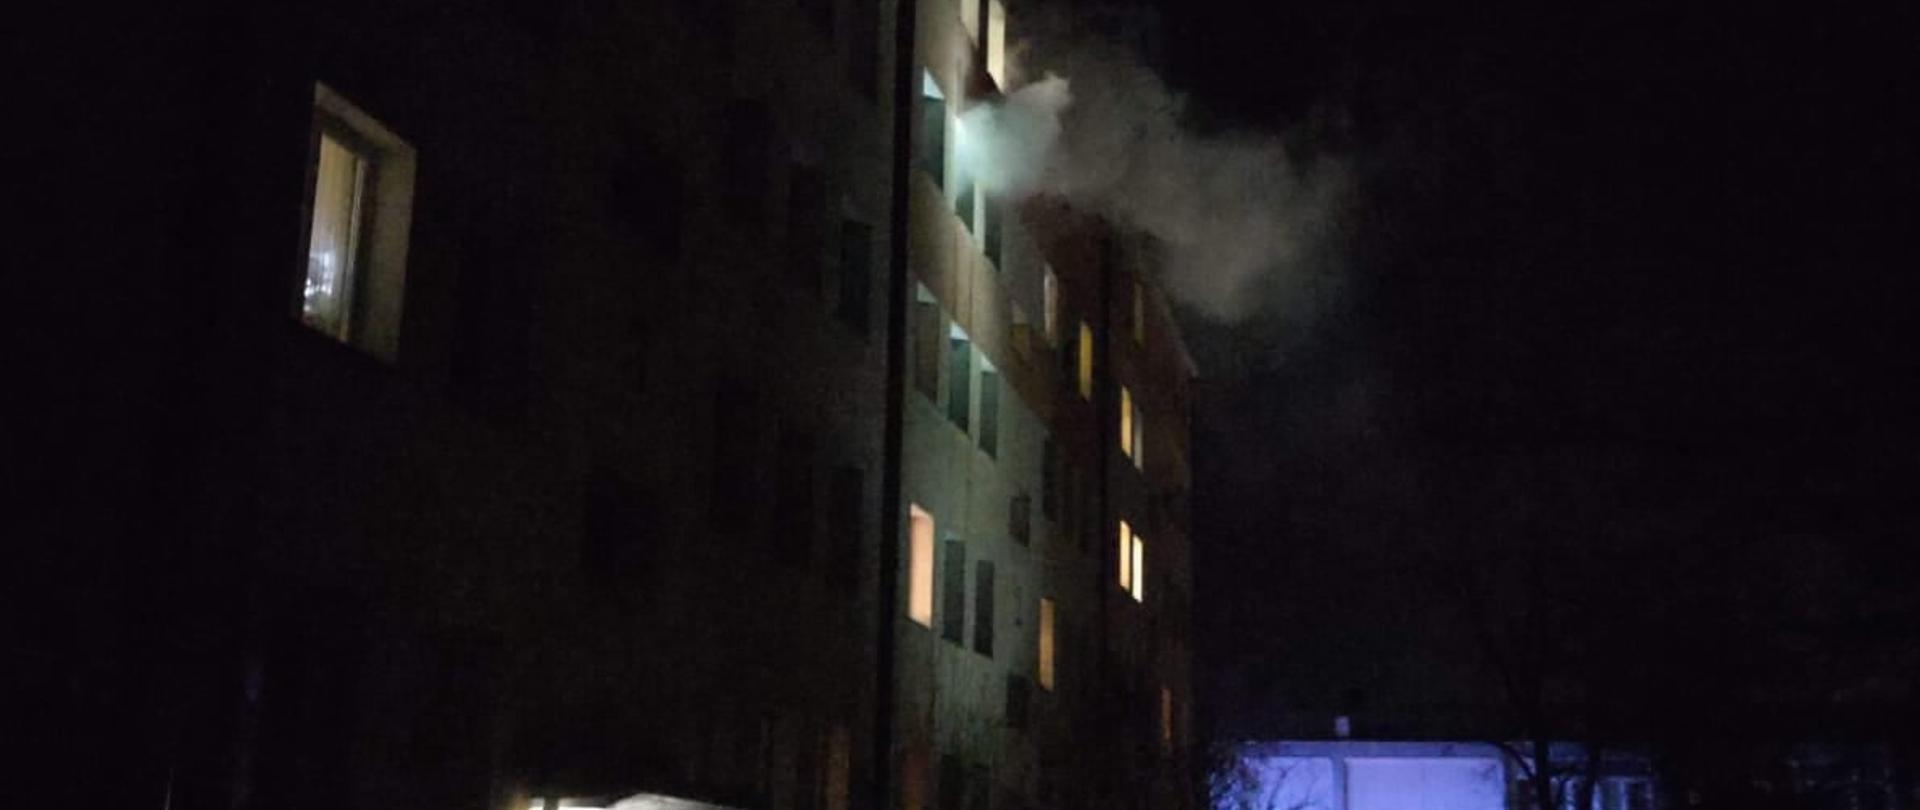 Pożar mieszkania w budynku mieszkalnym na ul. Sucharskiego w Brzegu